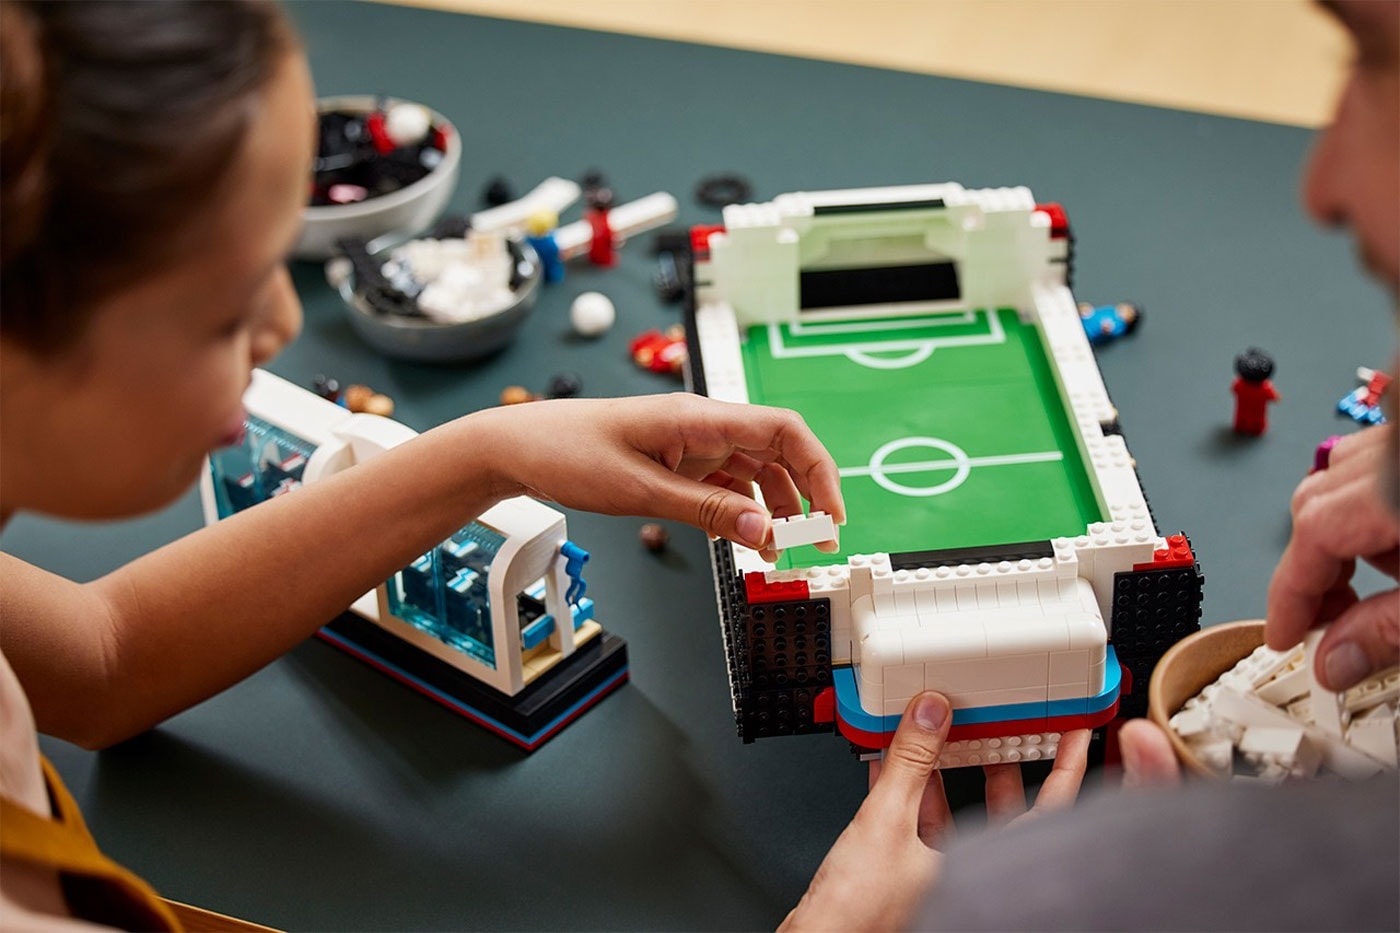 LEGO IDEAS - We love sports! - Soccer Field